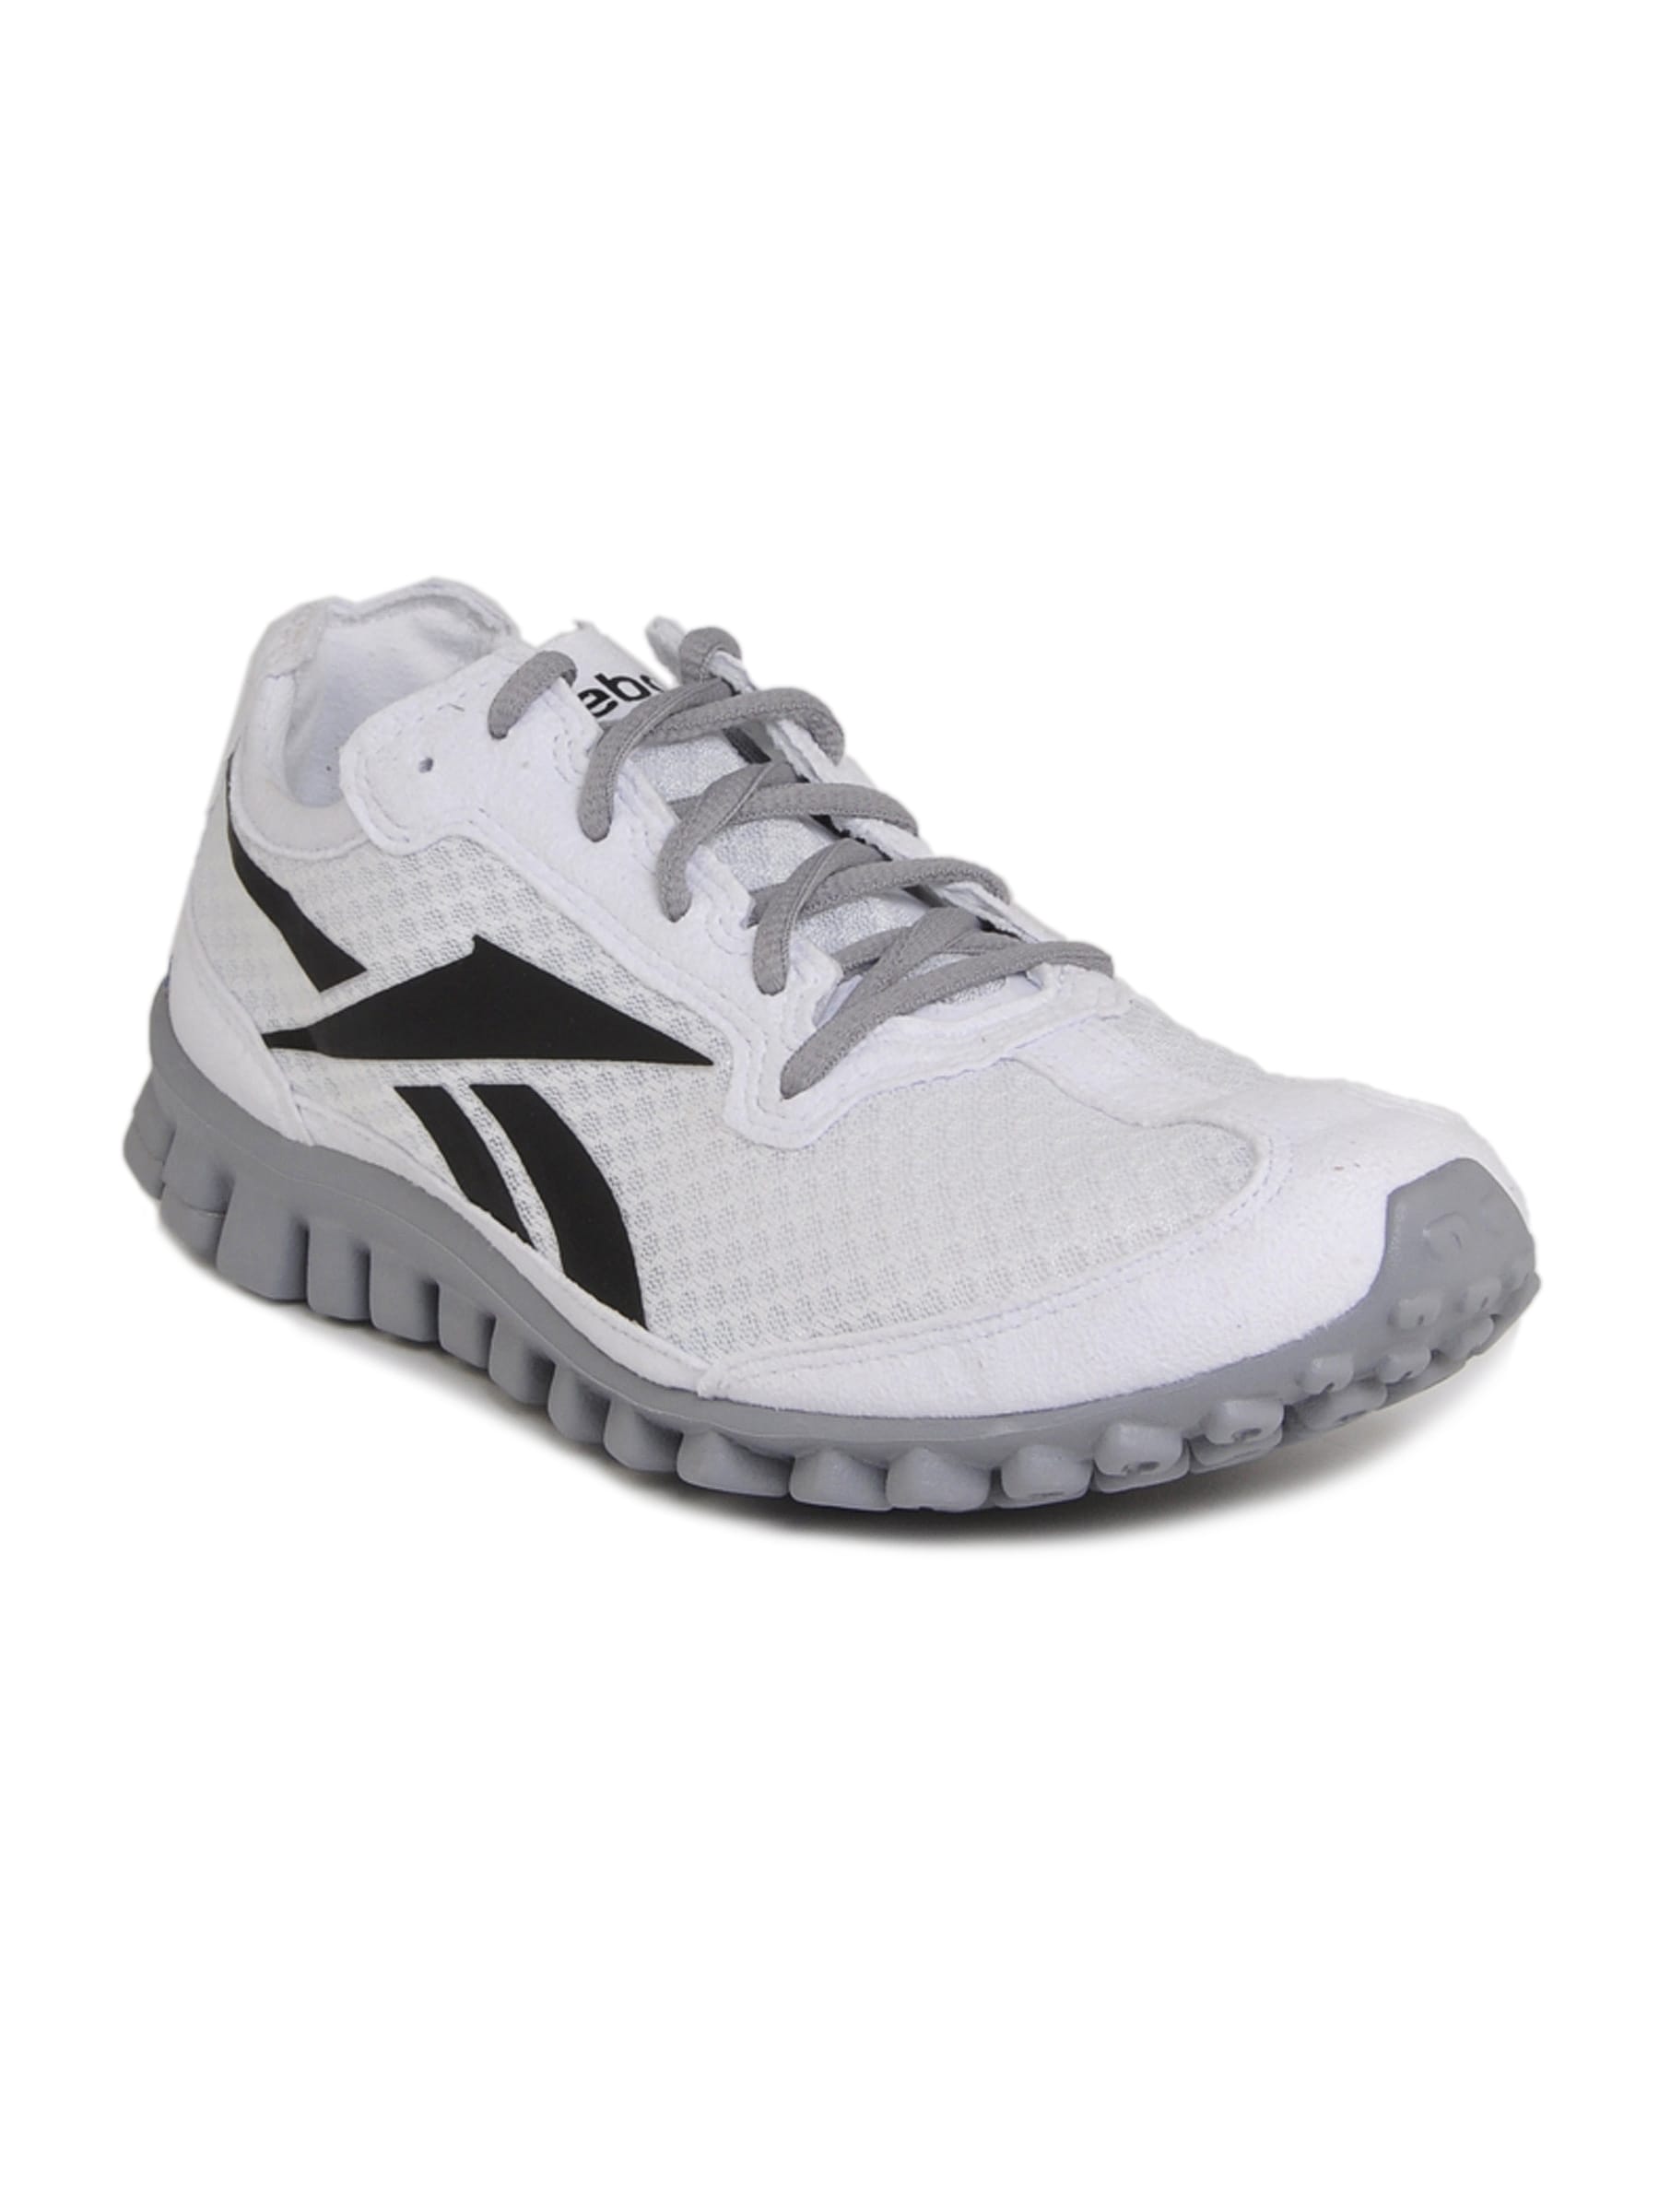 Reebok Men Reeflex Run White Sports Shoes